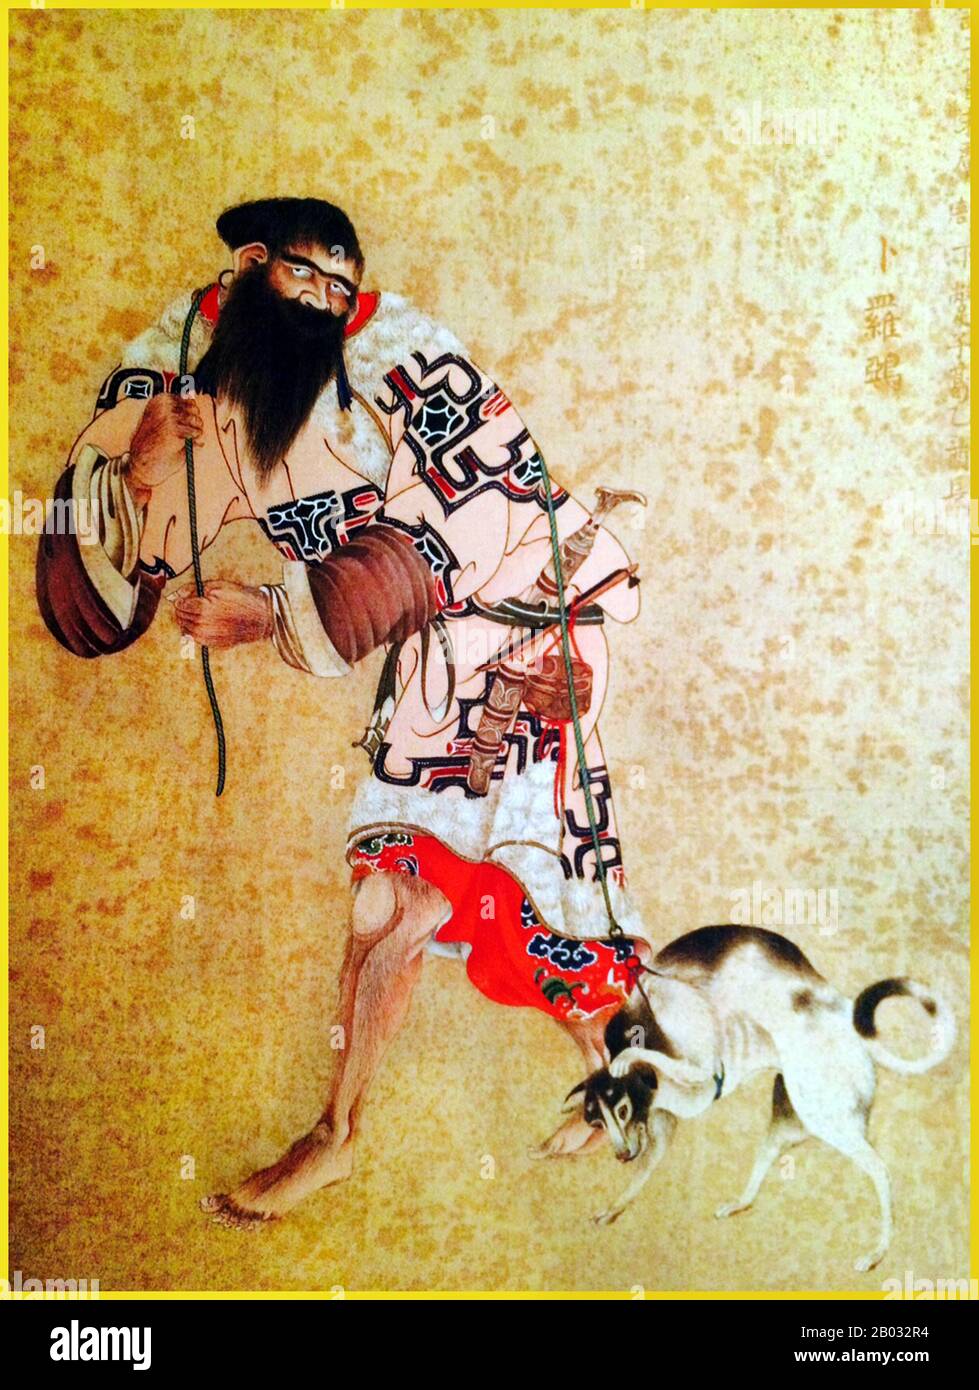 Kakizaki Hakyo (25. Juni 1764 - 26. Juli 1826) war ein Samurai-Künstler aus dem Matsumae-Clan. Sein erster Erfolg war eine Gruppe von 12 Porträts namens "The Ishu Retsuzo". Die Porträts waren von 12 Ainu-Chefs aus dem nördlichen Bereich von Ezo, heute Hokkaido. Stockfoto